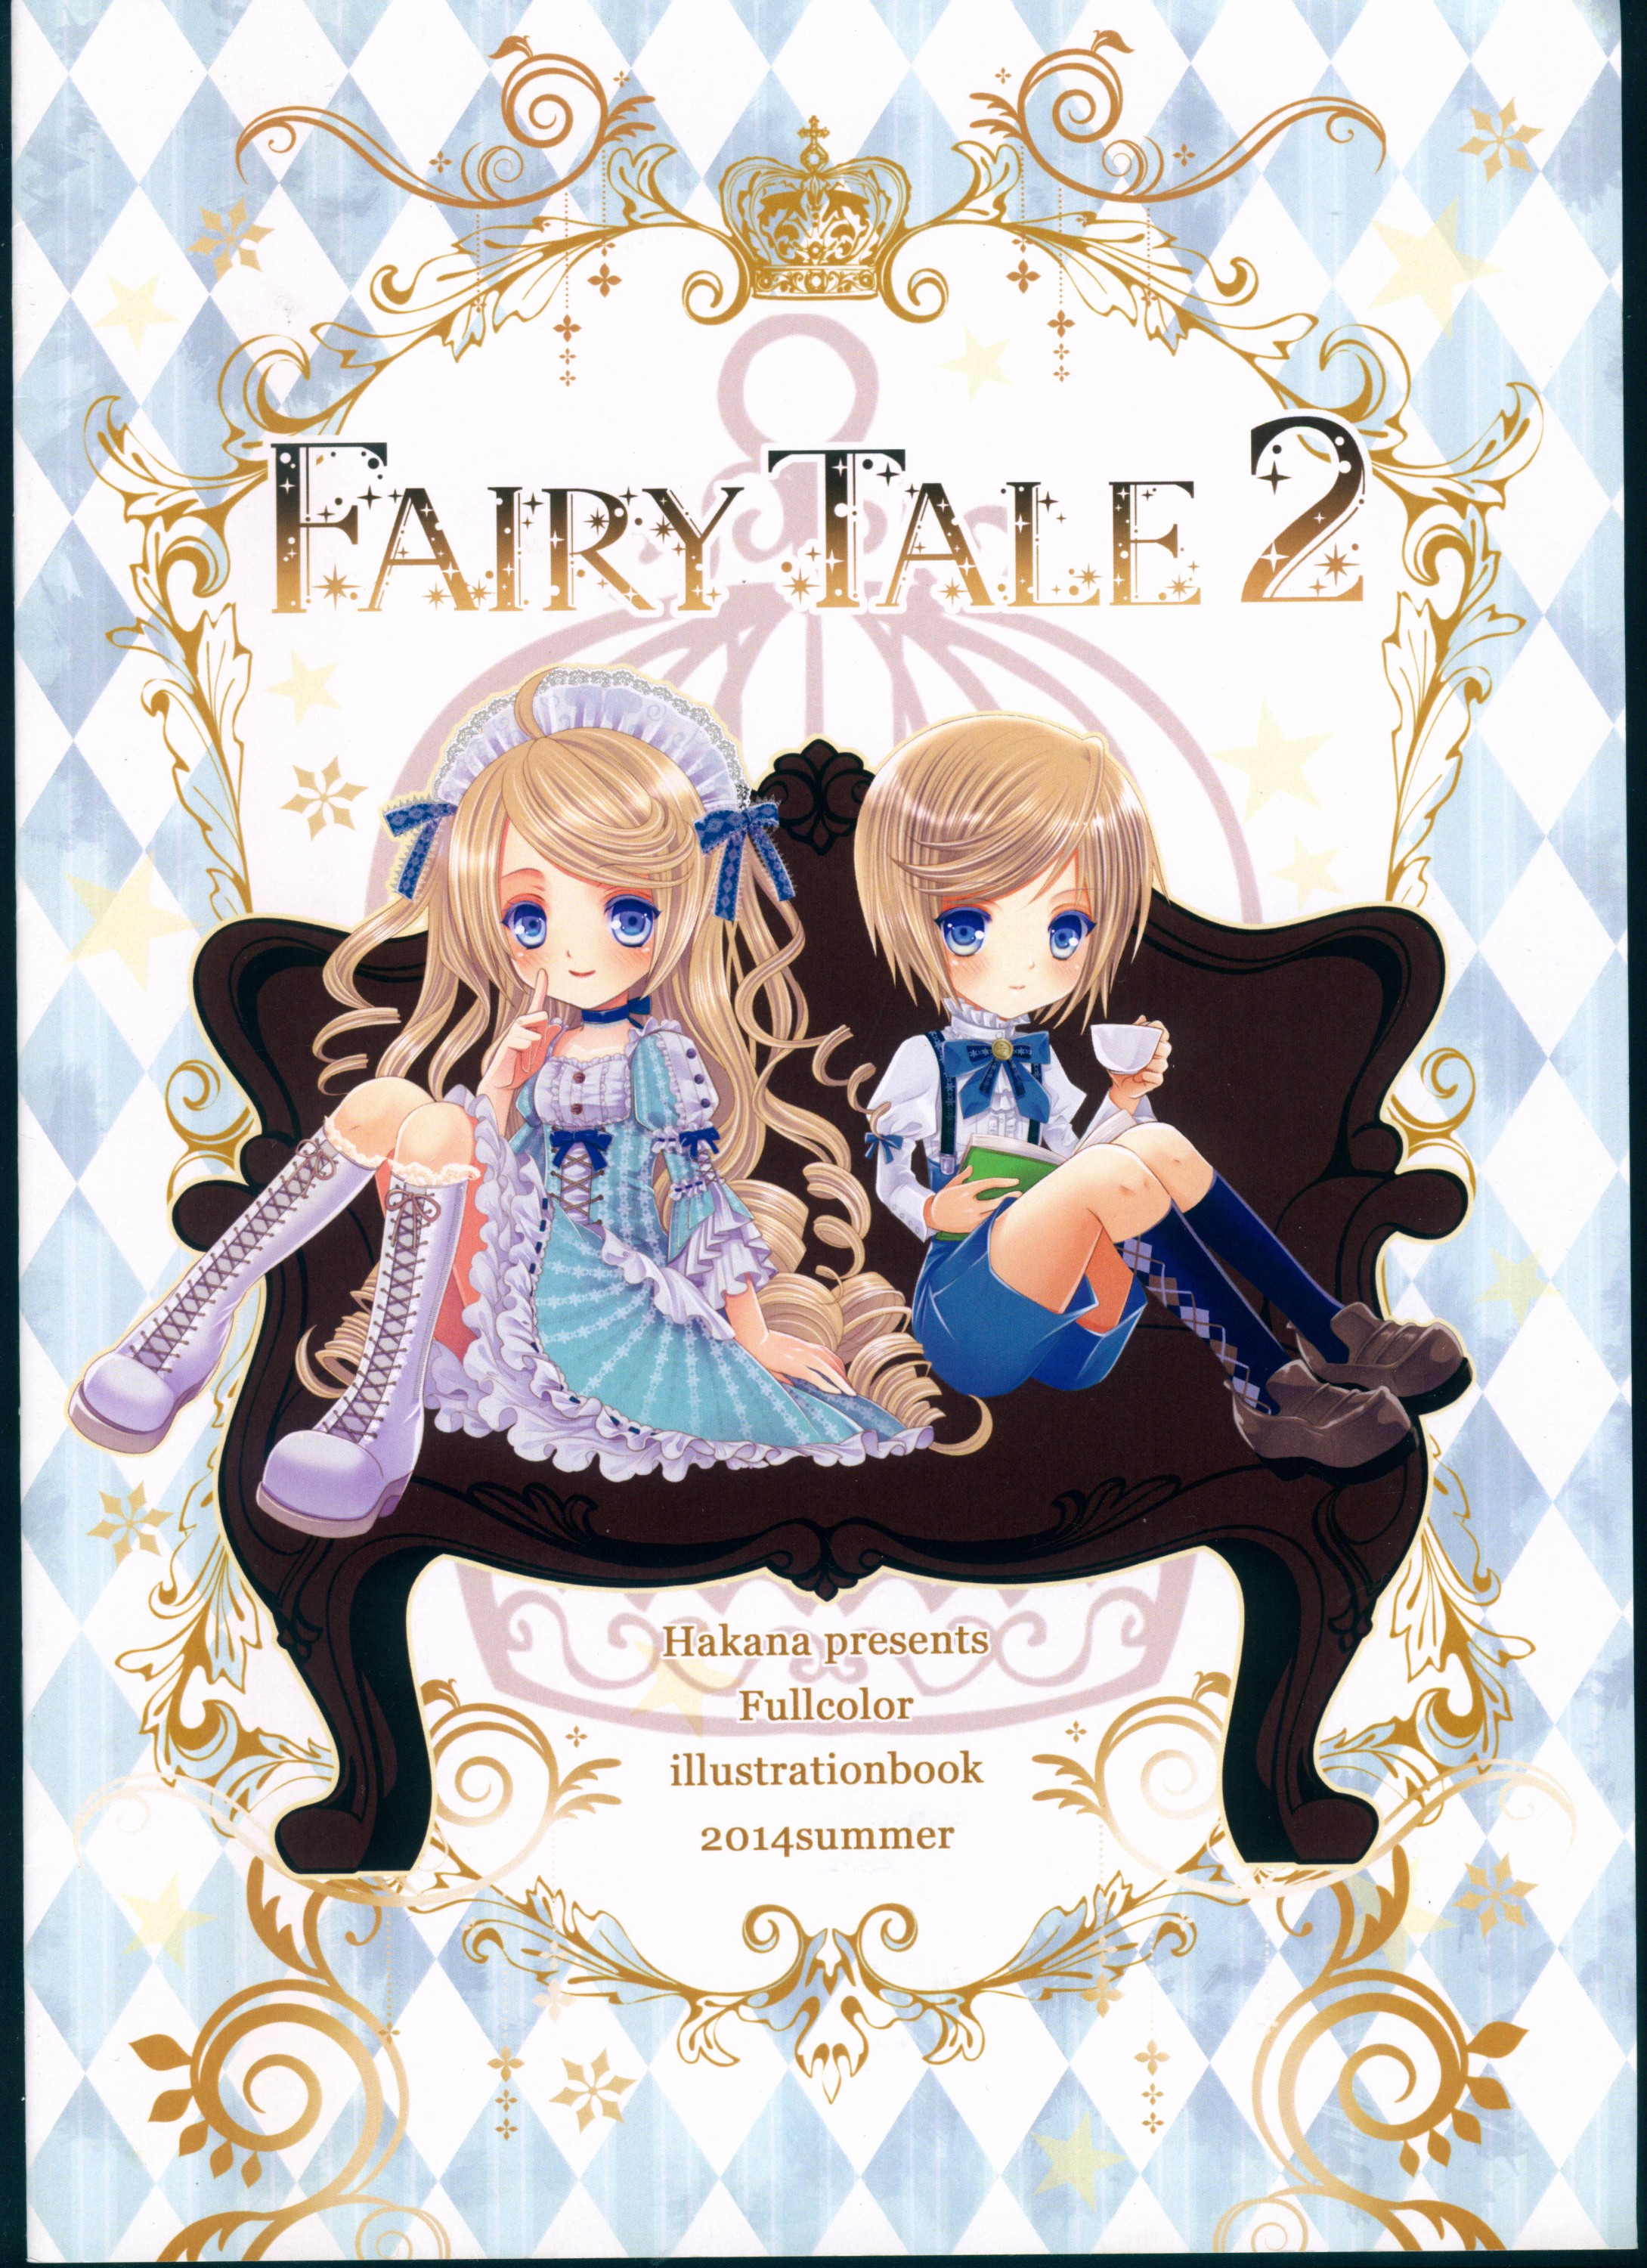 Fairy Tale 2 image by Hakana